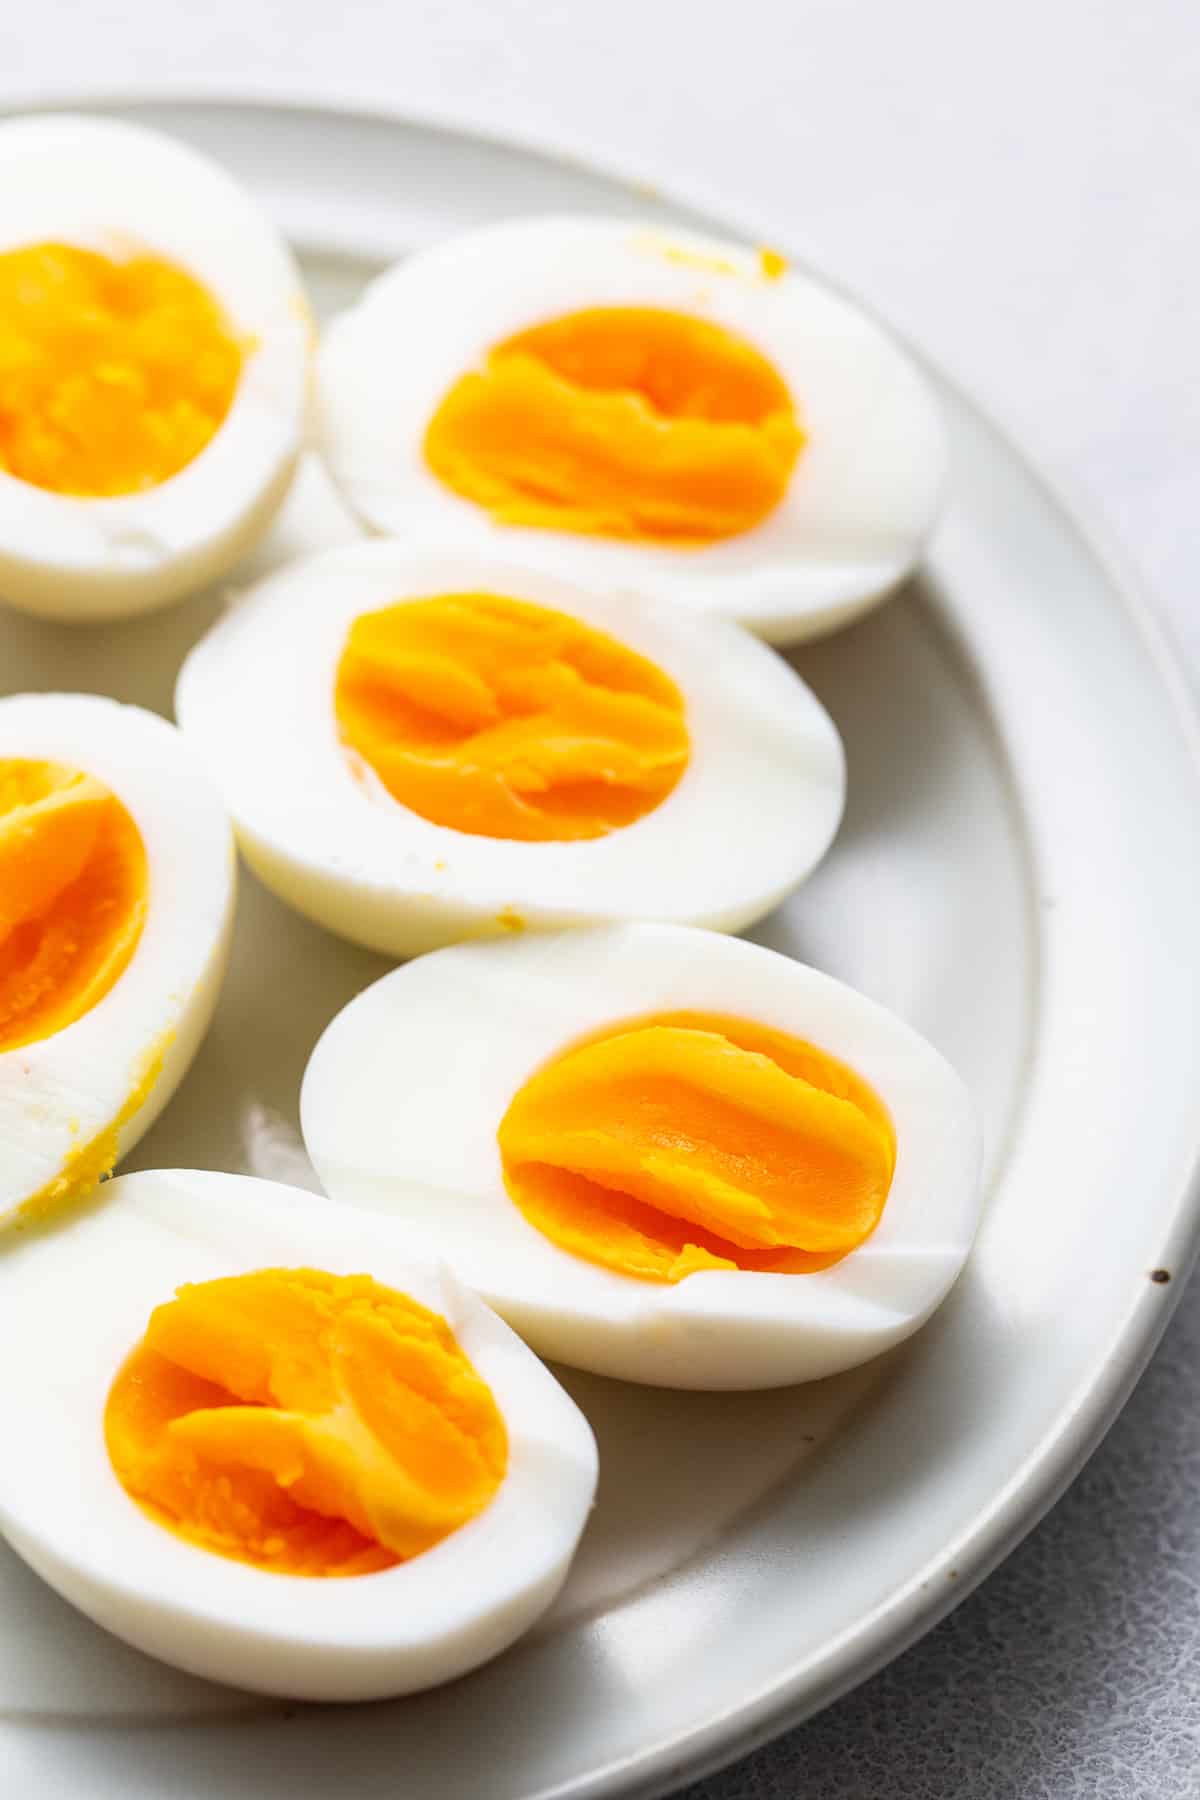 Heißluftfritteuse hart gekochte Eier auf einem Teller.